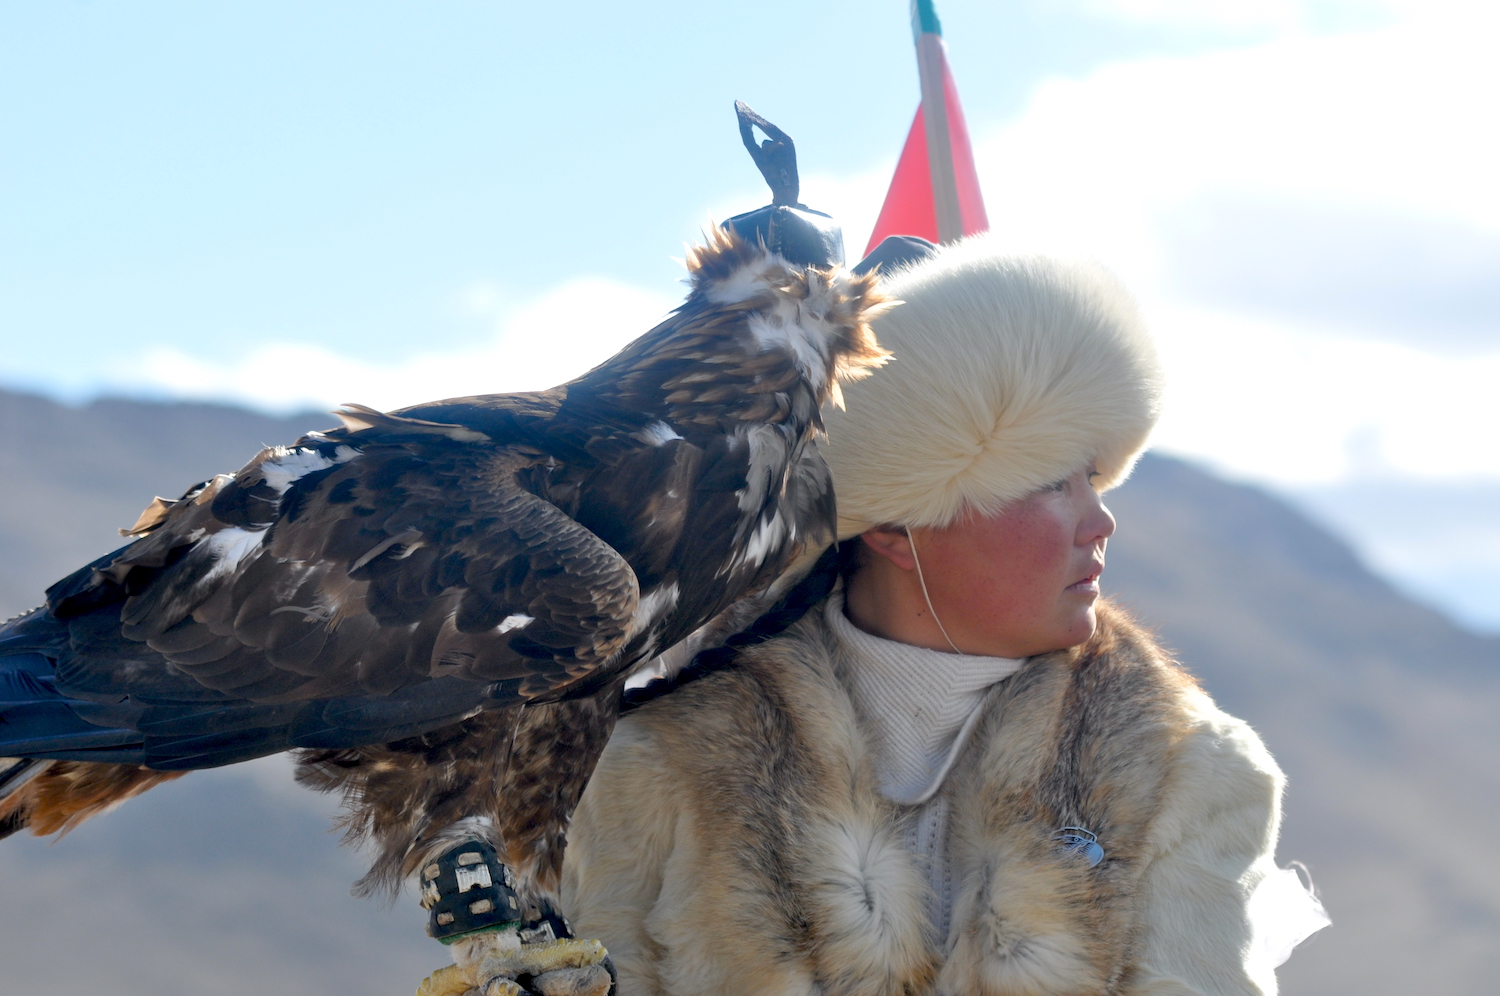 Adlerfestival Mongolei - die erste weibliche Adlertrainerin gewinnt 